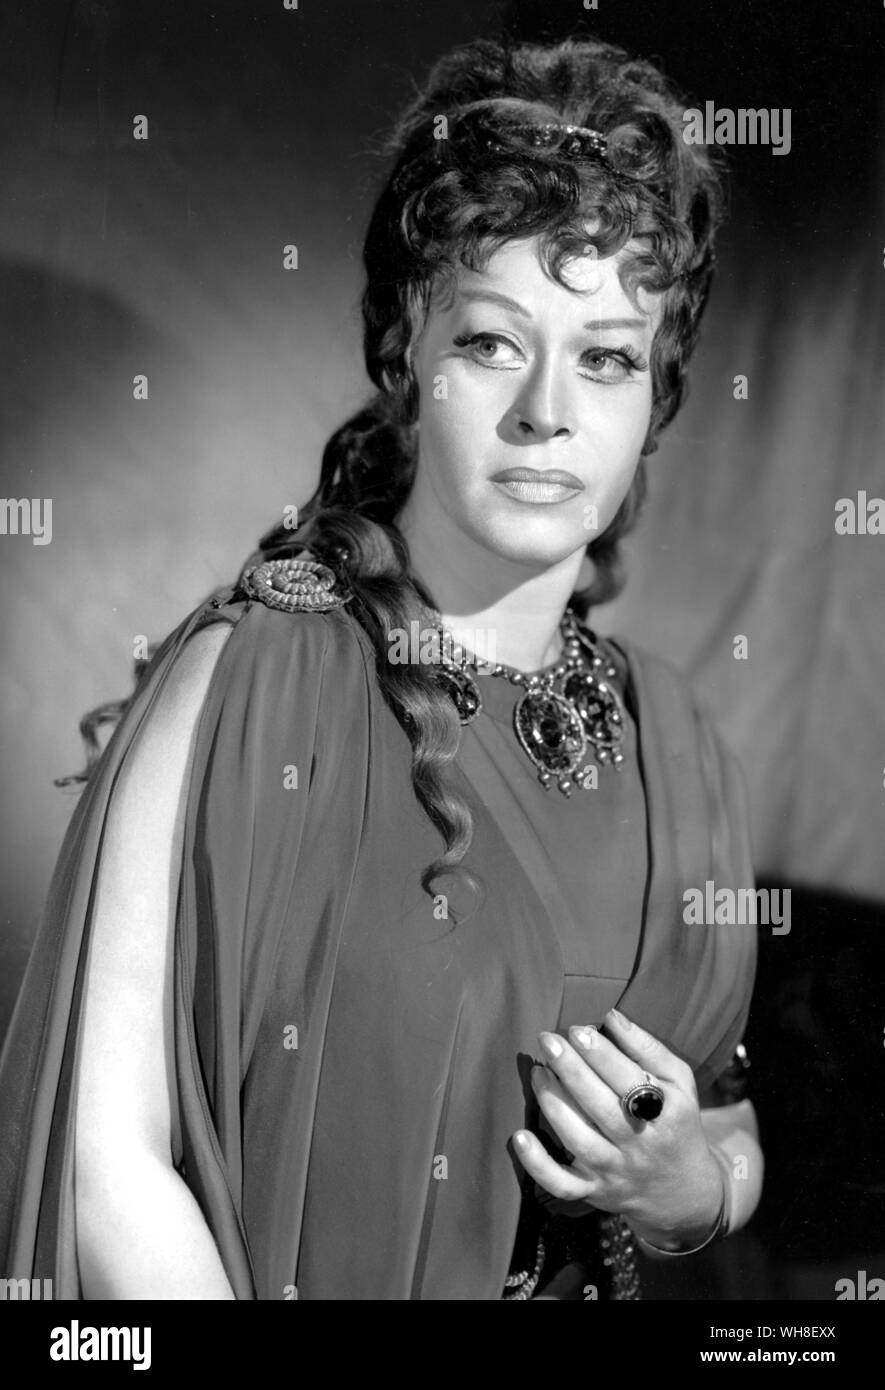 Regina Resnik als Elektra. Regina Resnik (1922 in New York City geboren) ist Opernsängerin und Schauspielerin, die für ihre Auftritte in Carmen, Don Carlo, Falstaff, Aida, Pik Dame und Elektra unter anderem bekannt ist. Stockfoto